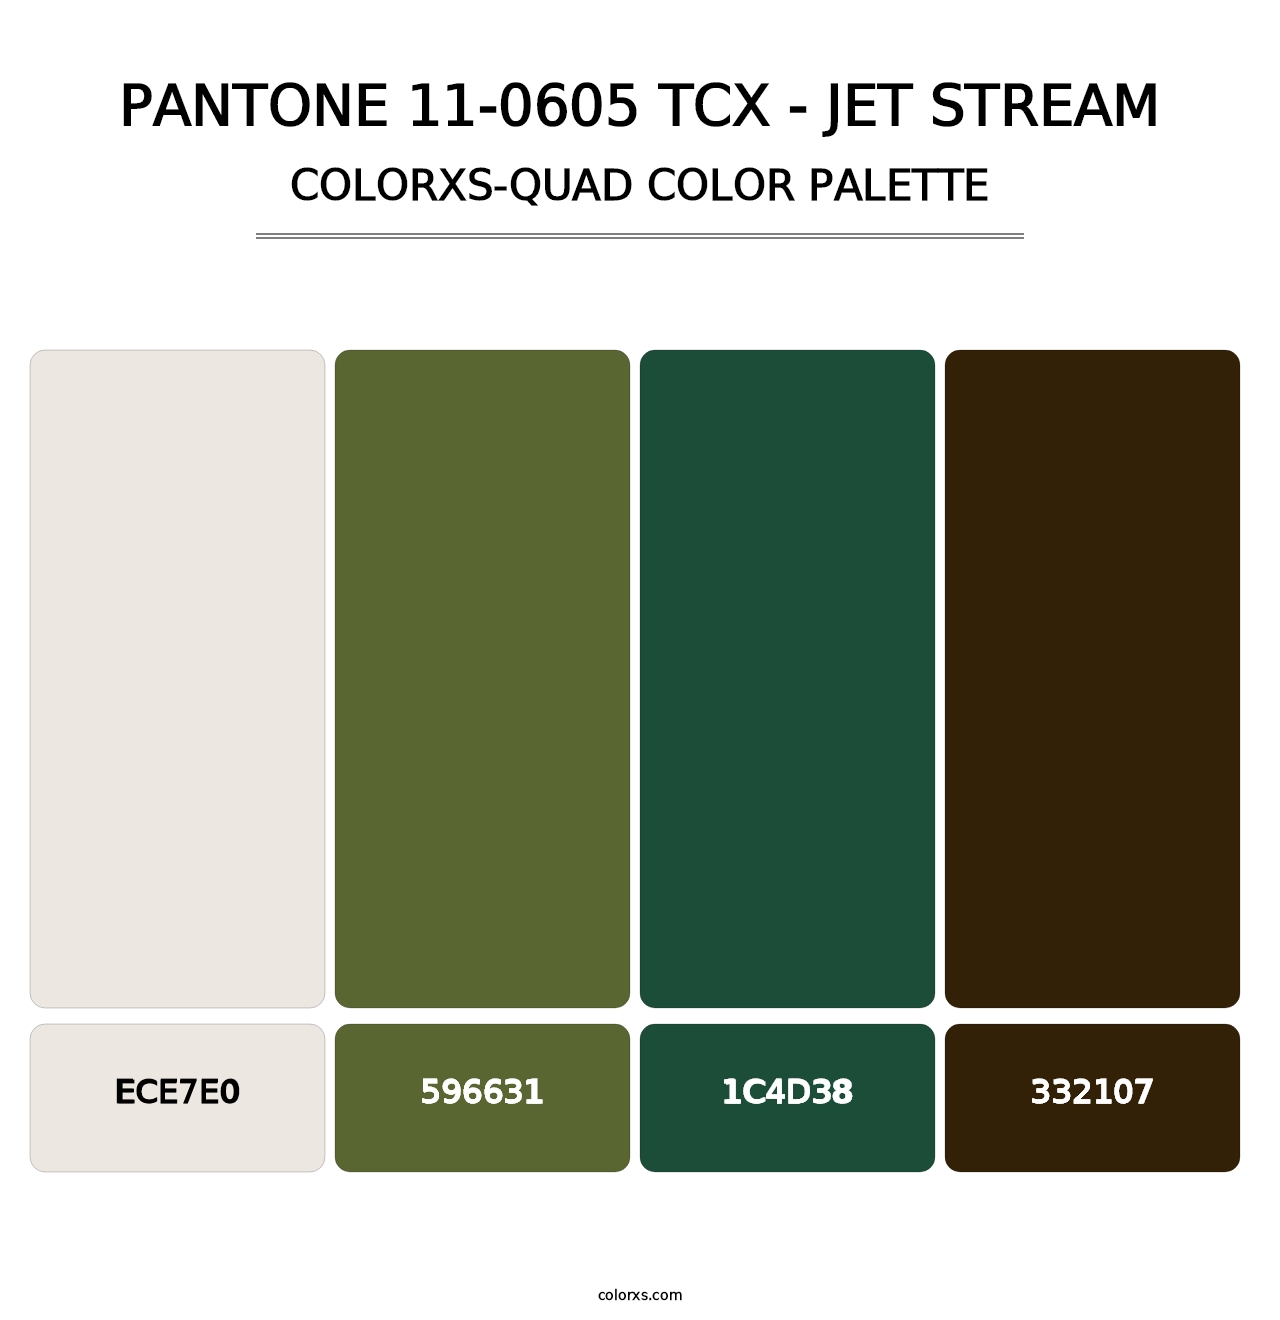 PANTONE 11-0605 TCX - Jet Stream - Colorxs Quad Palette